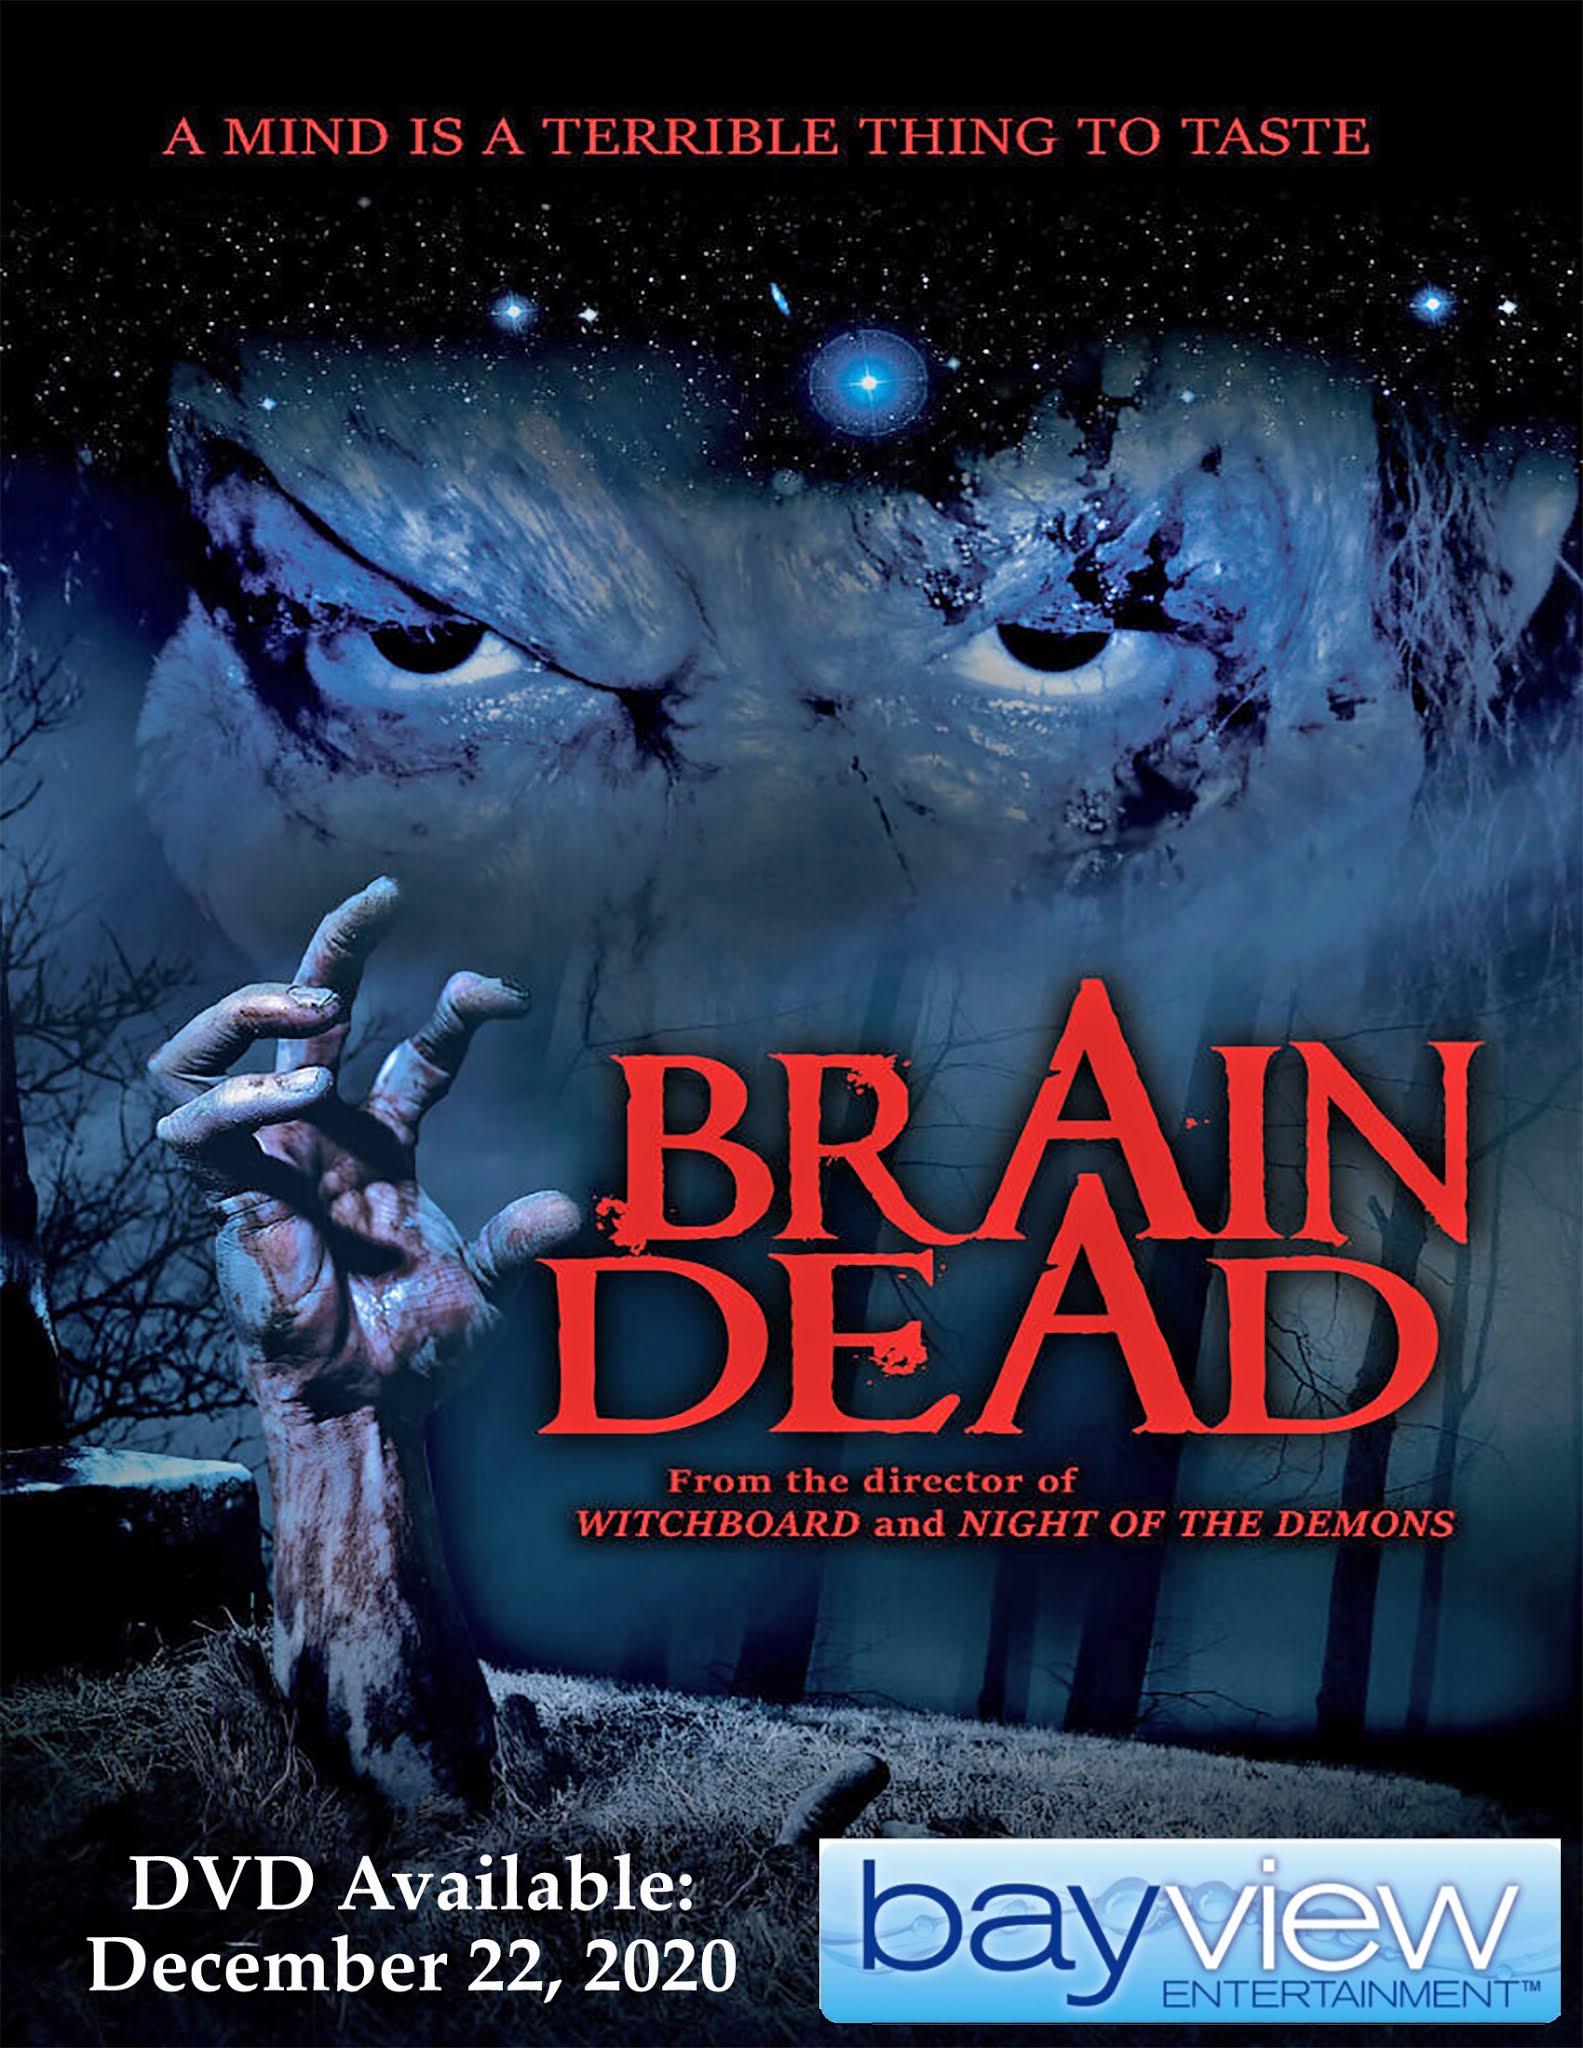 Grant brendecke sarah Brain Dead